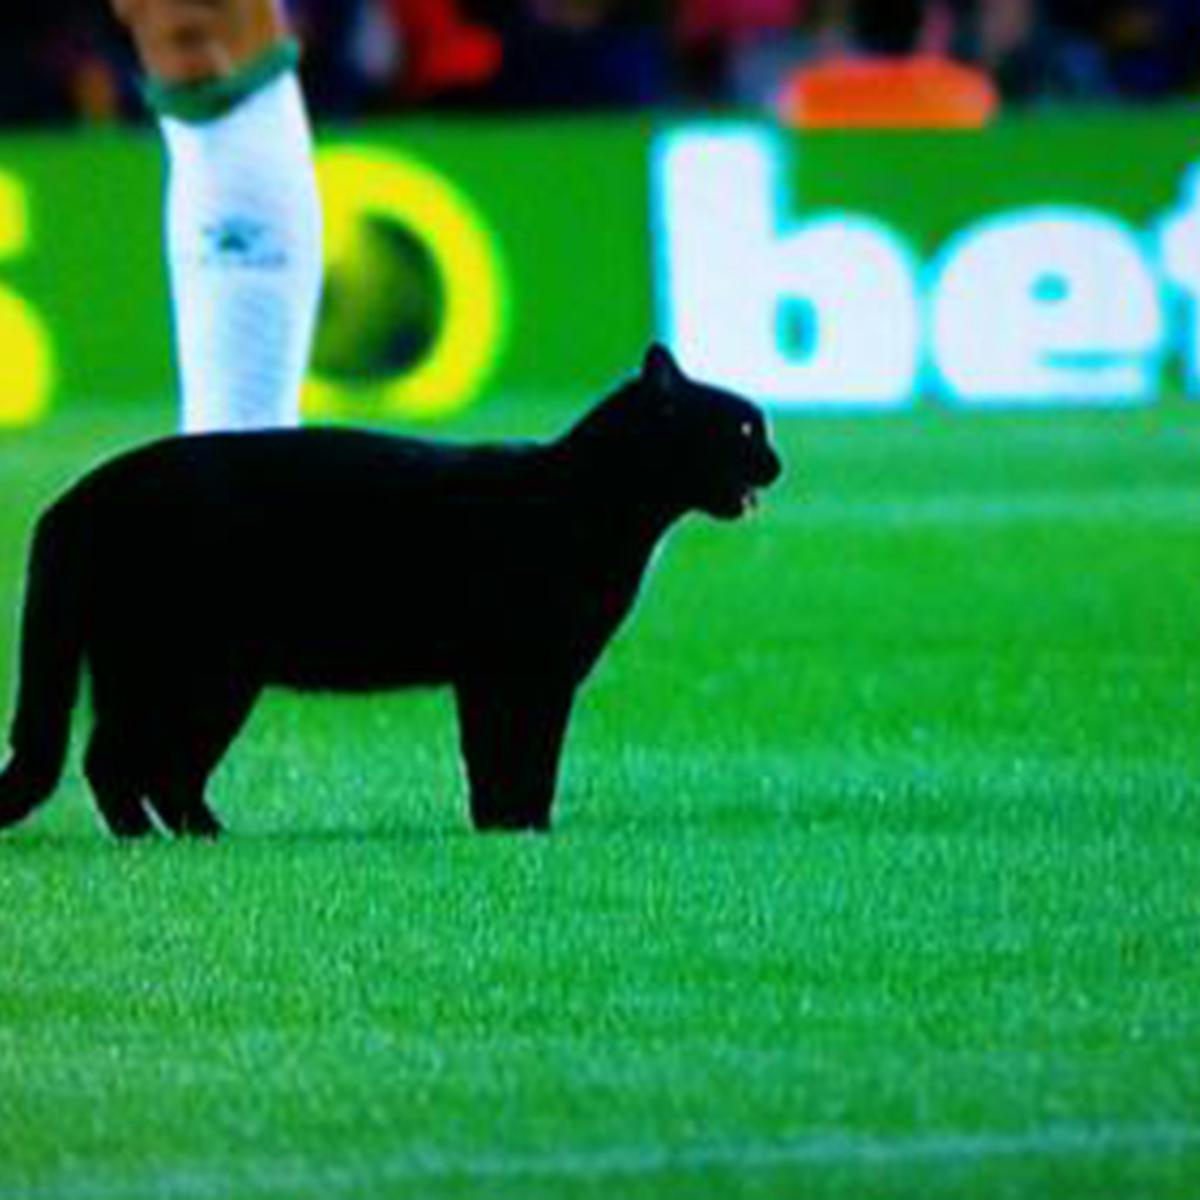 Em jogo do Barcelona, gato preto rouba a cena e invade o gramado